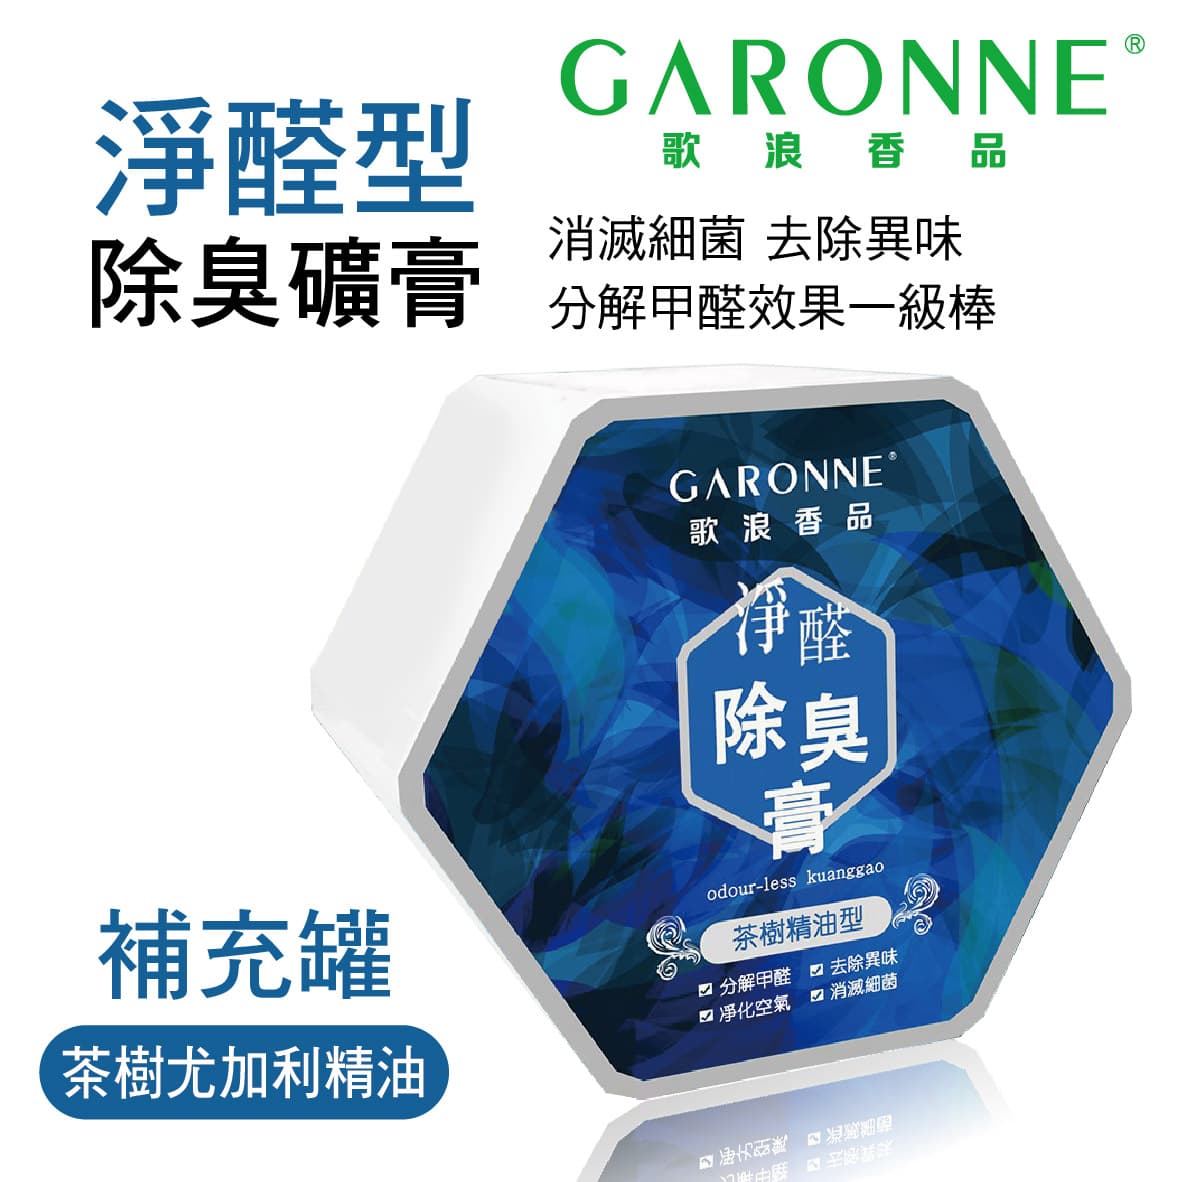 真便宜 GARONNE歌浪香品 淨醛型除臭礦膏(茶樹尤加利精油)補充罐